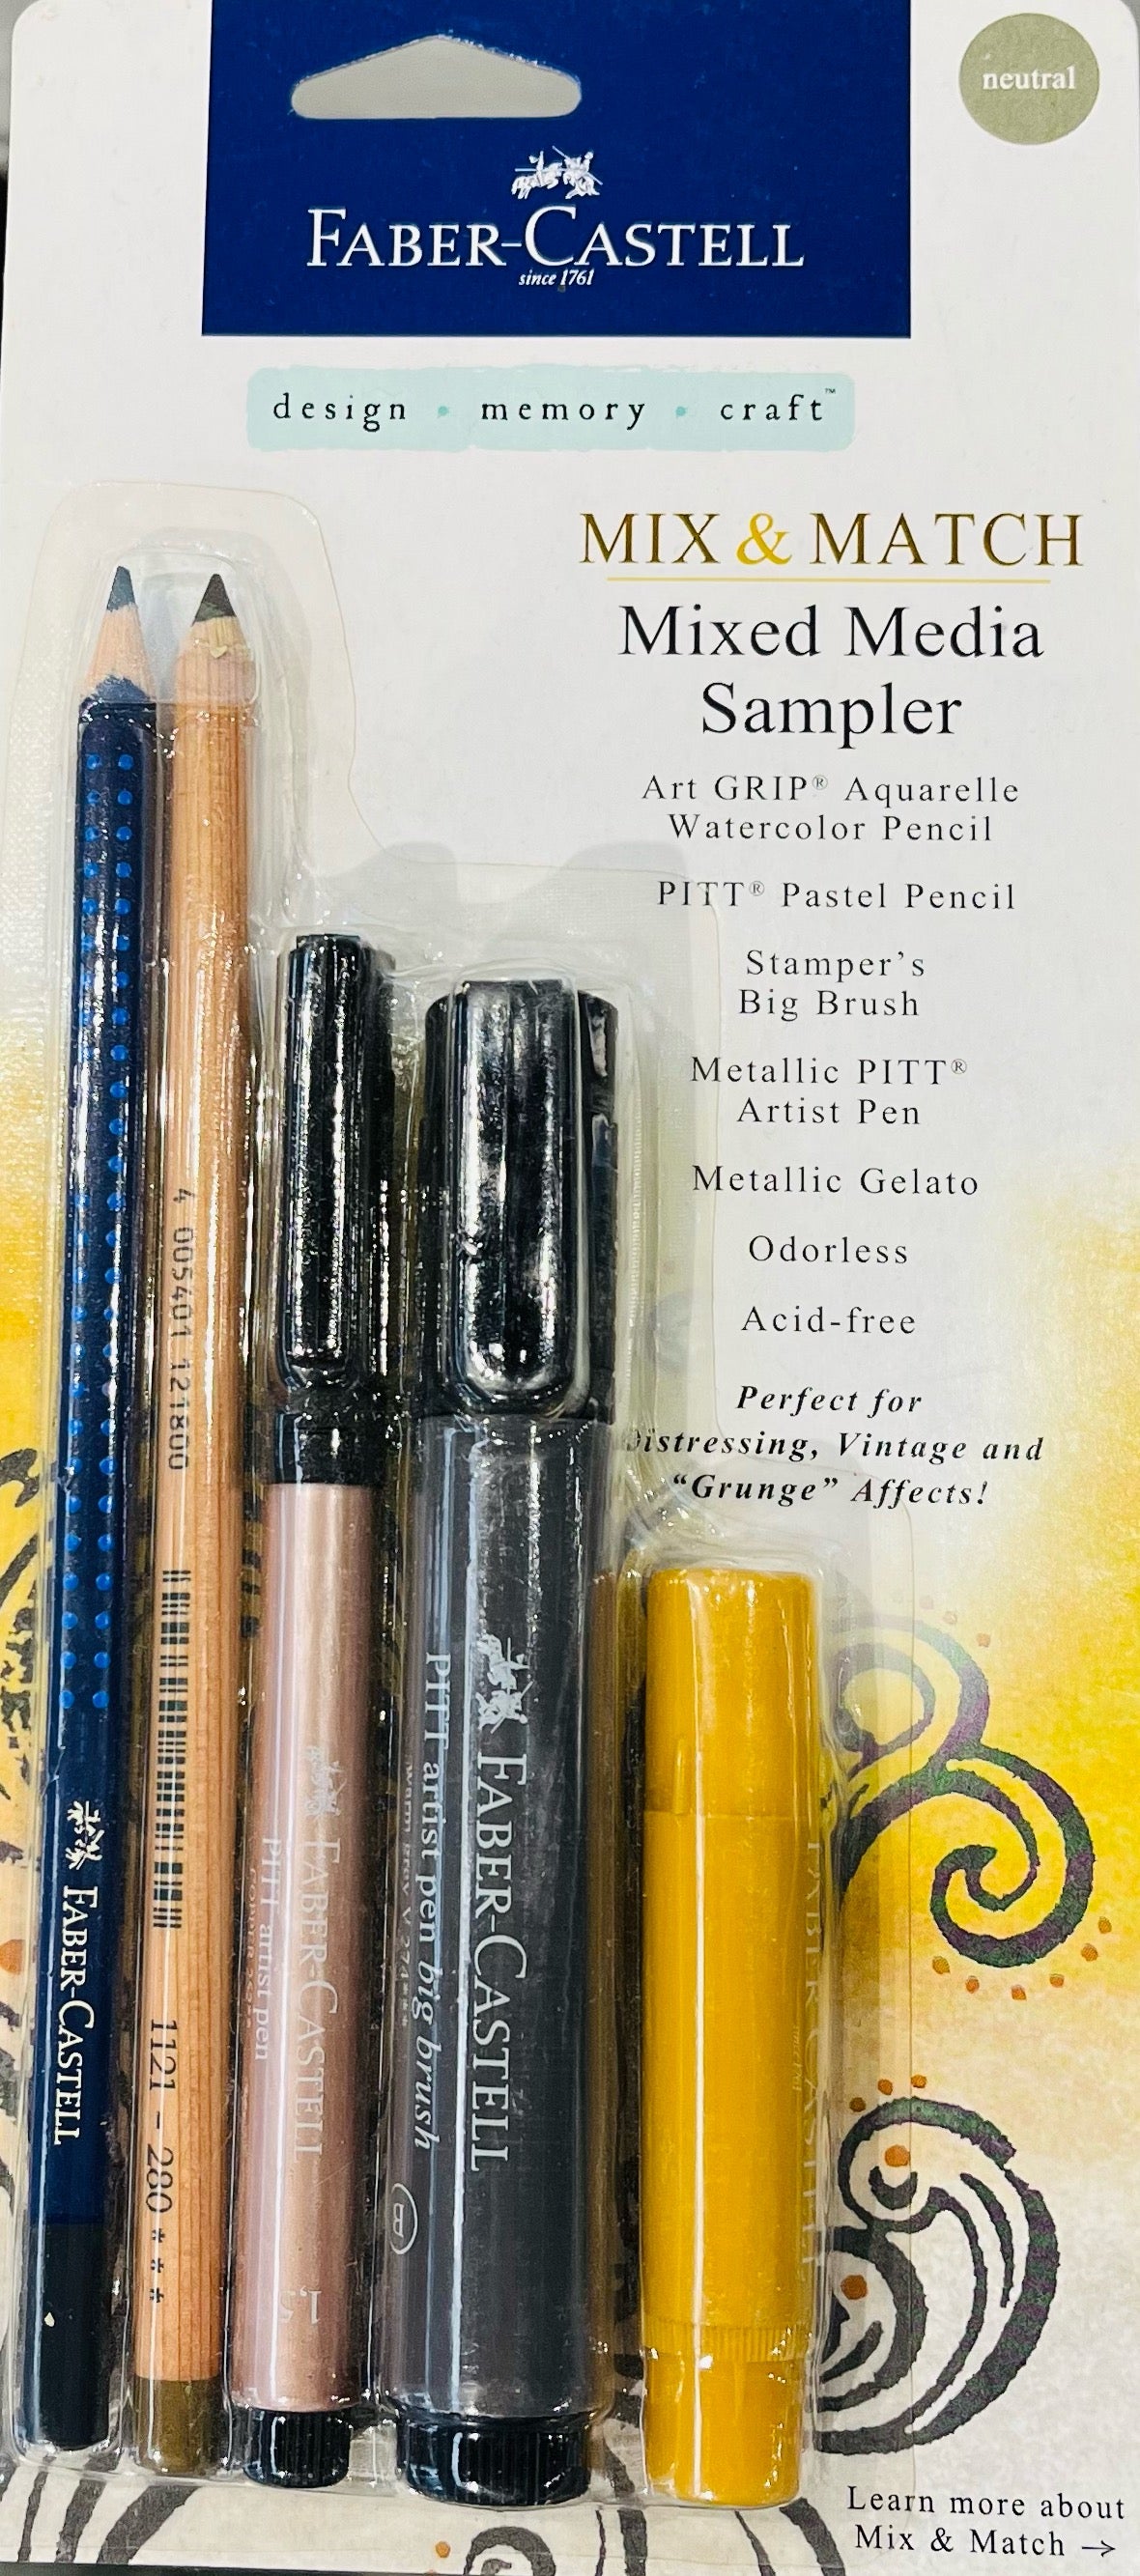 Faber-Castell Mix & Match Metallic Pitt Artist Pens | Michaels